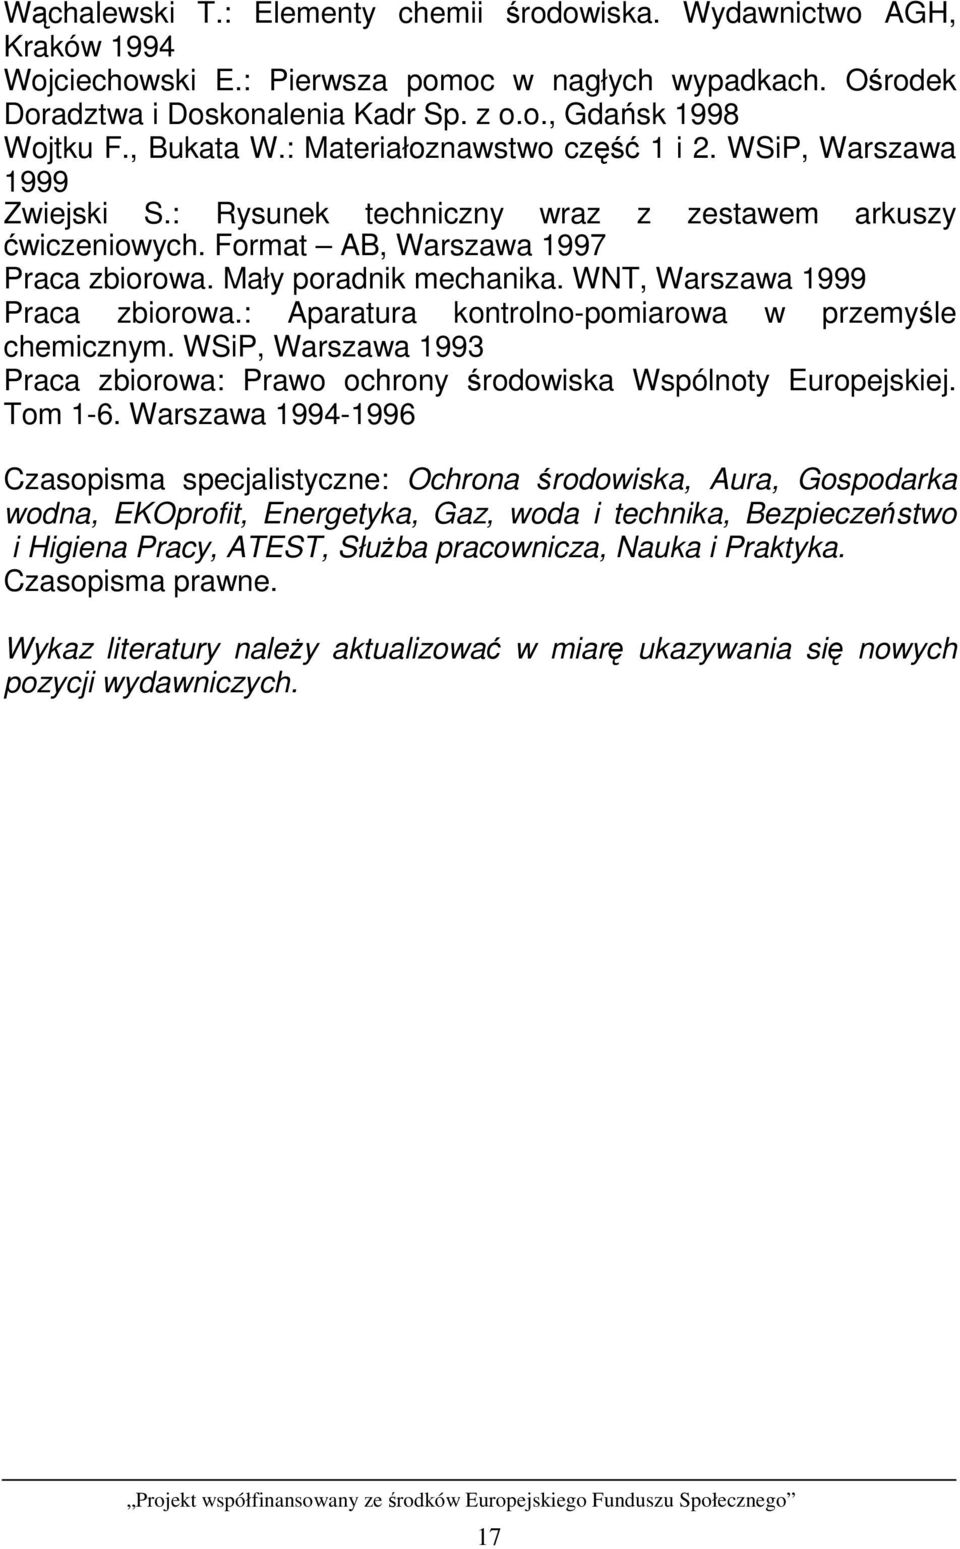 WNT, Warszawa 1999 Praca zbiorowa.: Aparatura kontrolno-pomiarowa w przemyśle chemicznym. WSiP, Warszawa 1993 Praca zbiorowa: Prawo ochrony środowiska Wspólnoty Europejskiej. Tom 1-6.